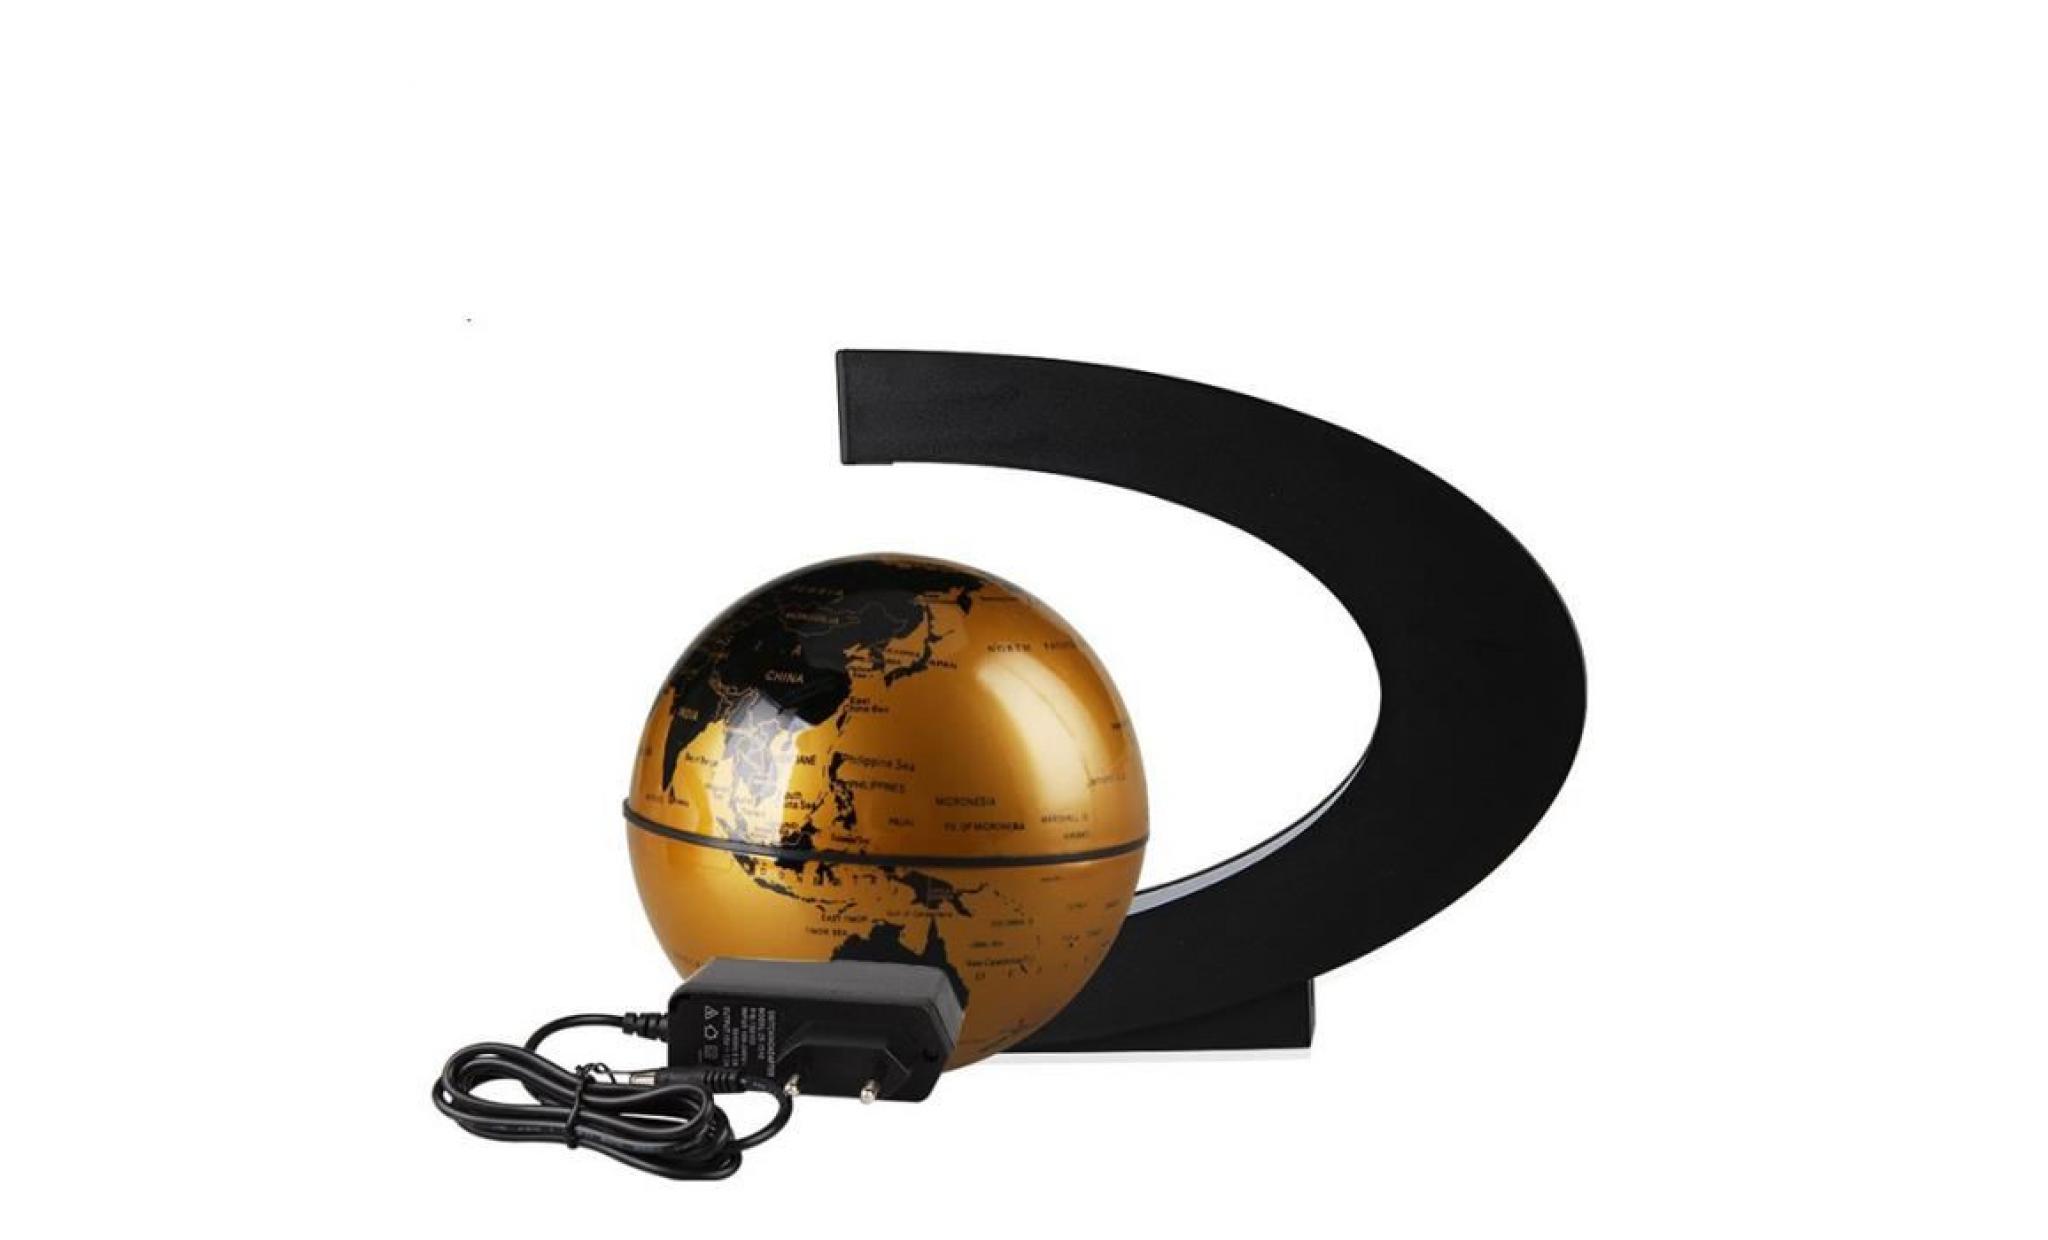 créatif globe terrestre lumineux flottant magnétique lévitation globe lamp avec lumières led sphère pour démonstration   golden pas cher